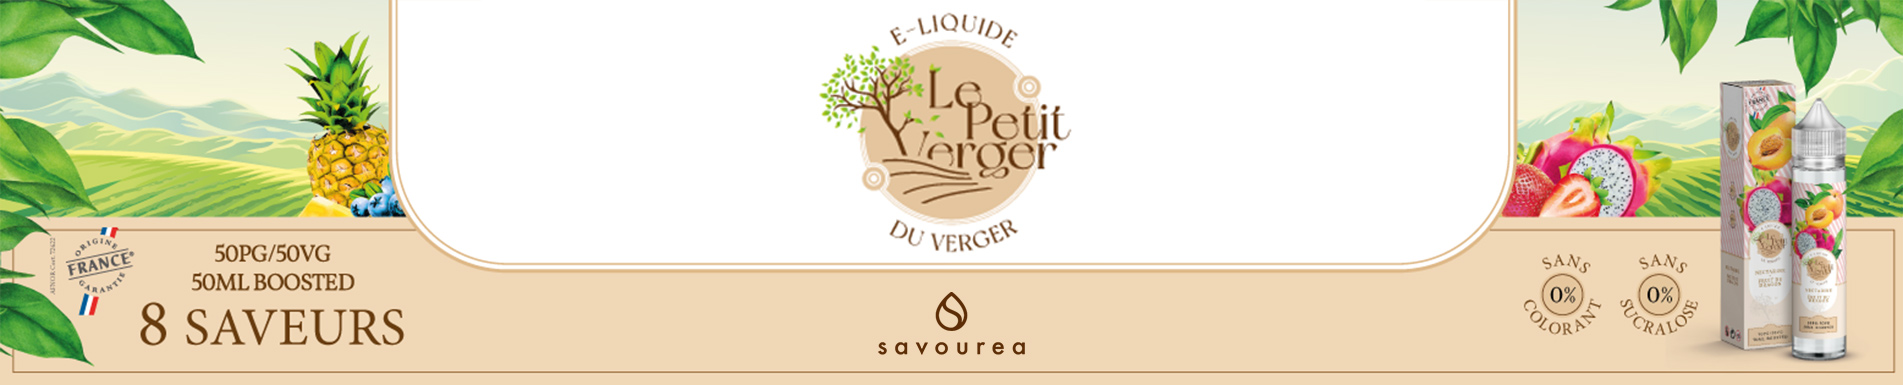 E-liquides Le Petit Verger par Savourea